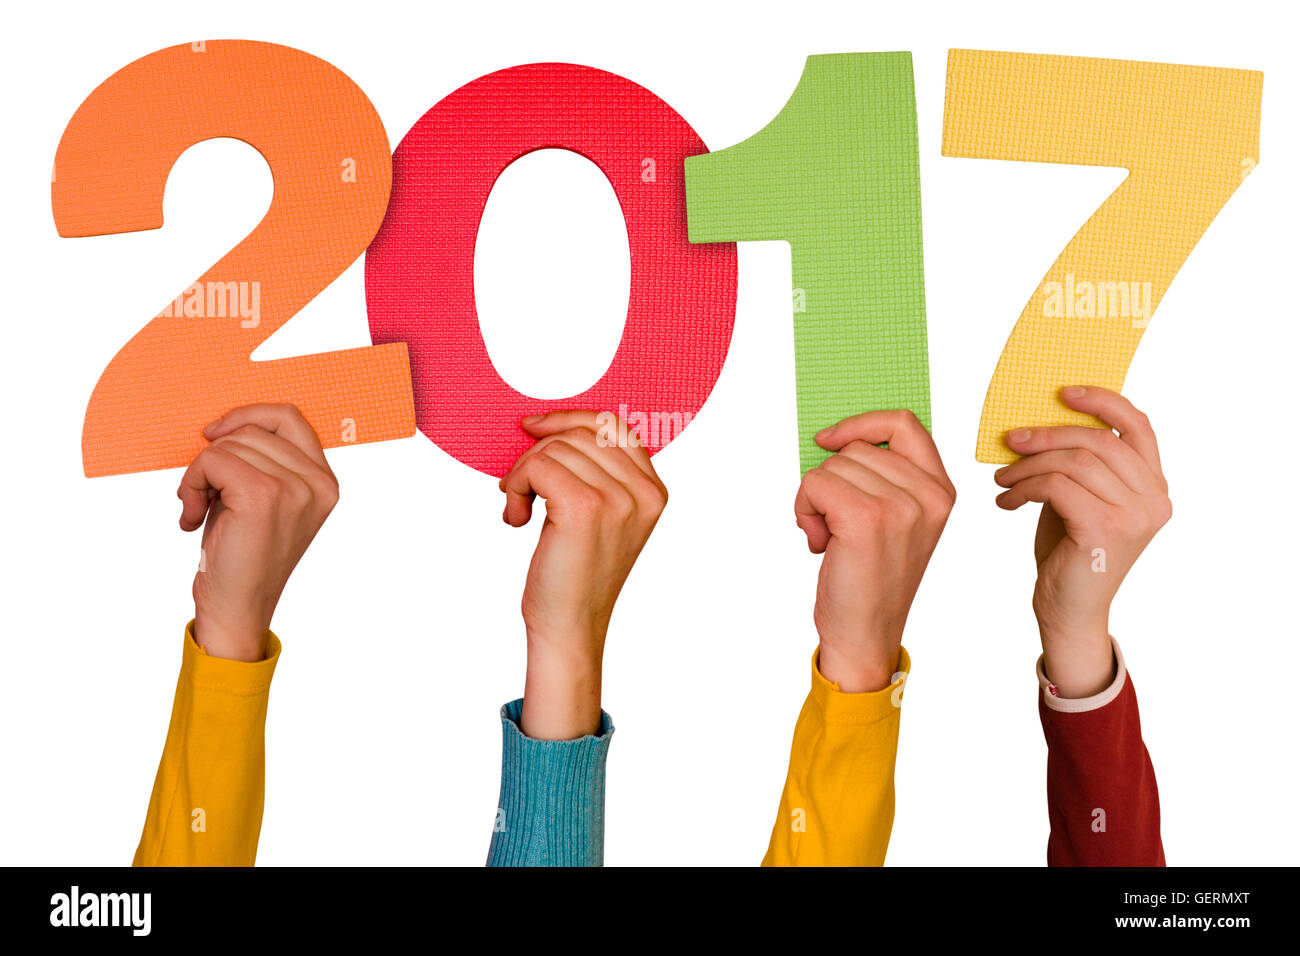 Les mains avec numéros de couleur indique l'année 2017. Isolé sur fond blanc Banque D'Images